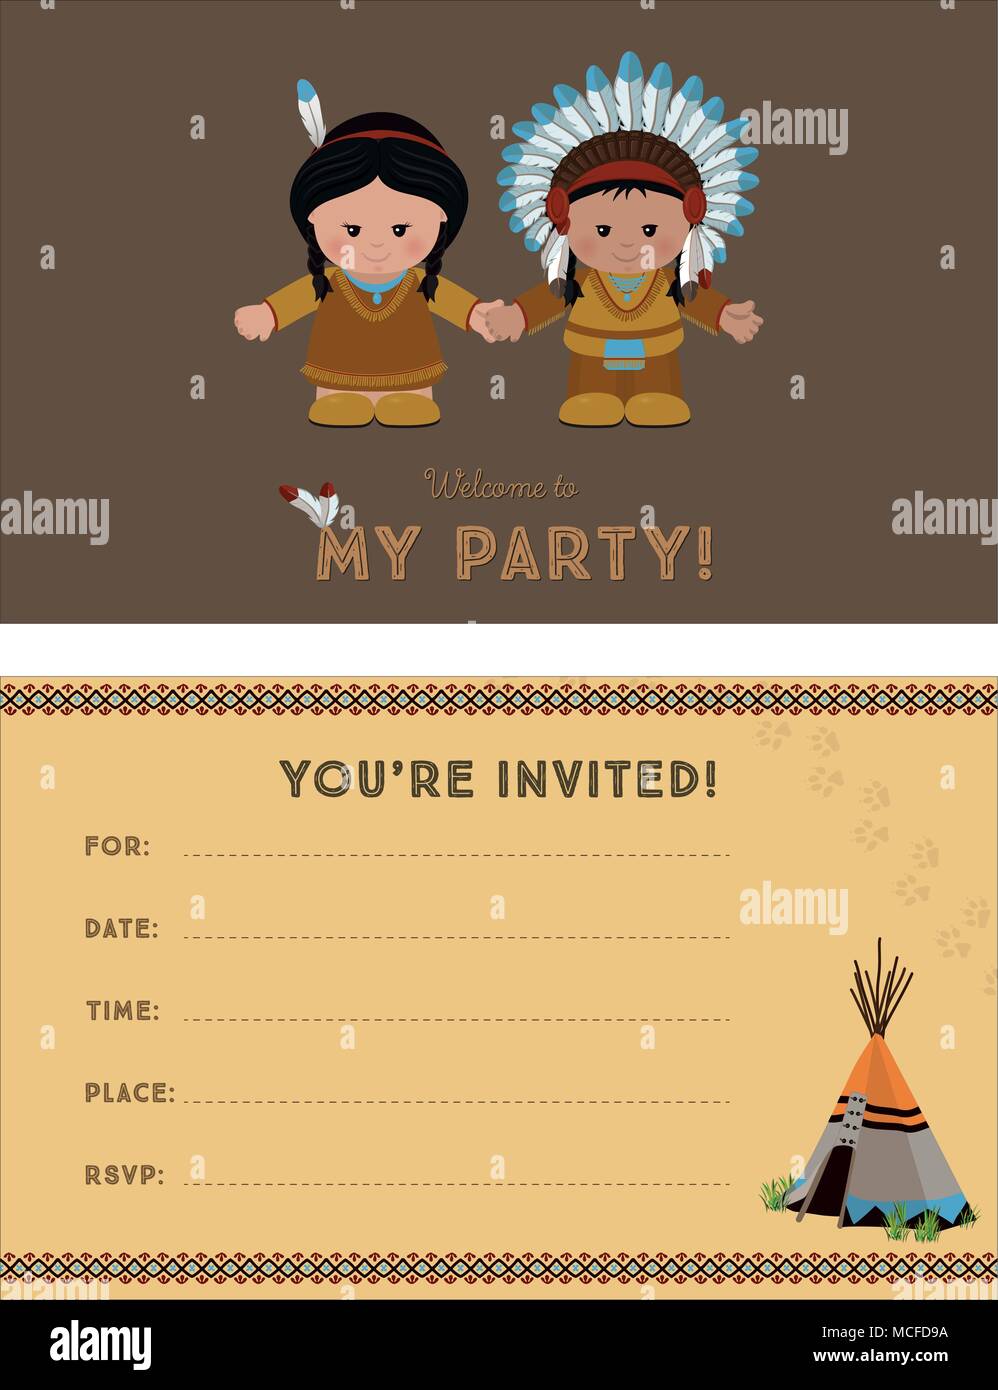 Einladung zur Party, Karte Einladung mit Indianer für Kinder Party. Vorlage der Karte Einladung, Vorder- und Rückseite, Vector Illustration. Stock Vektor